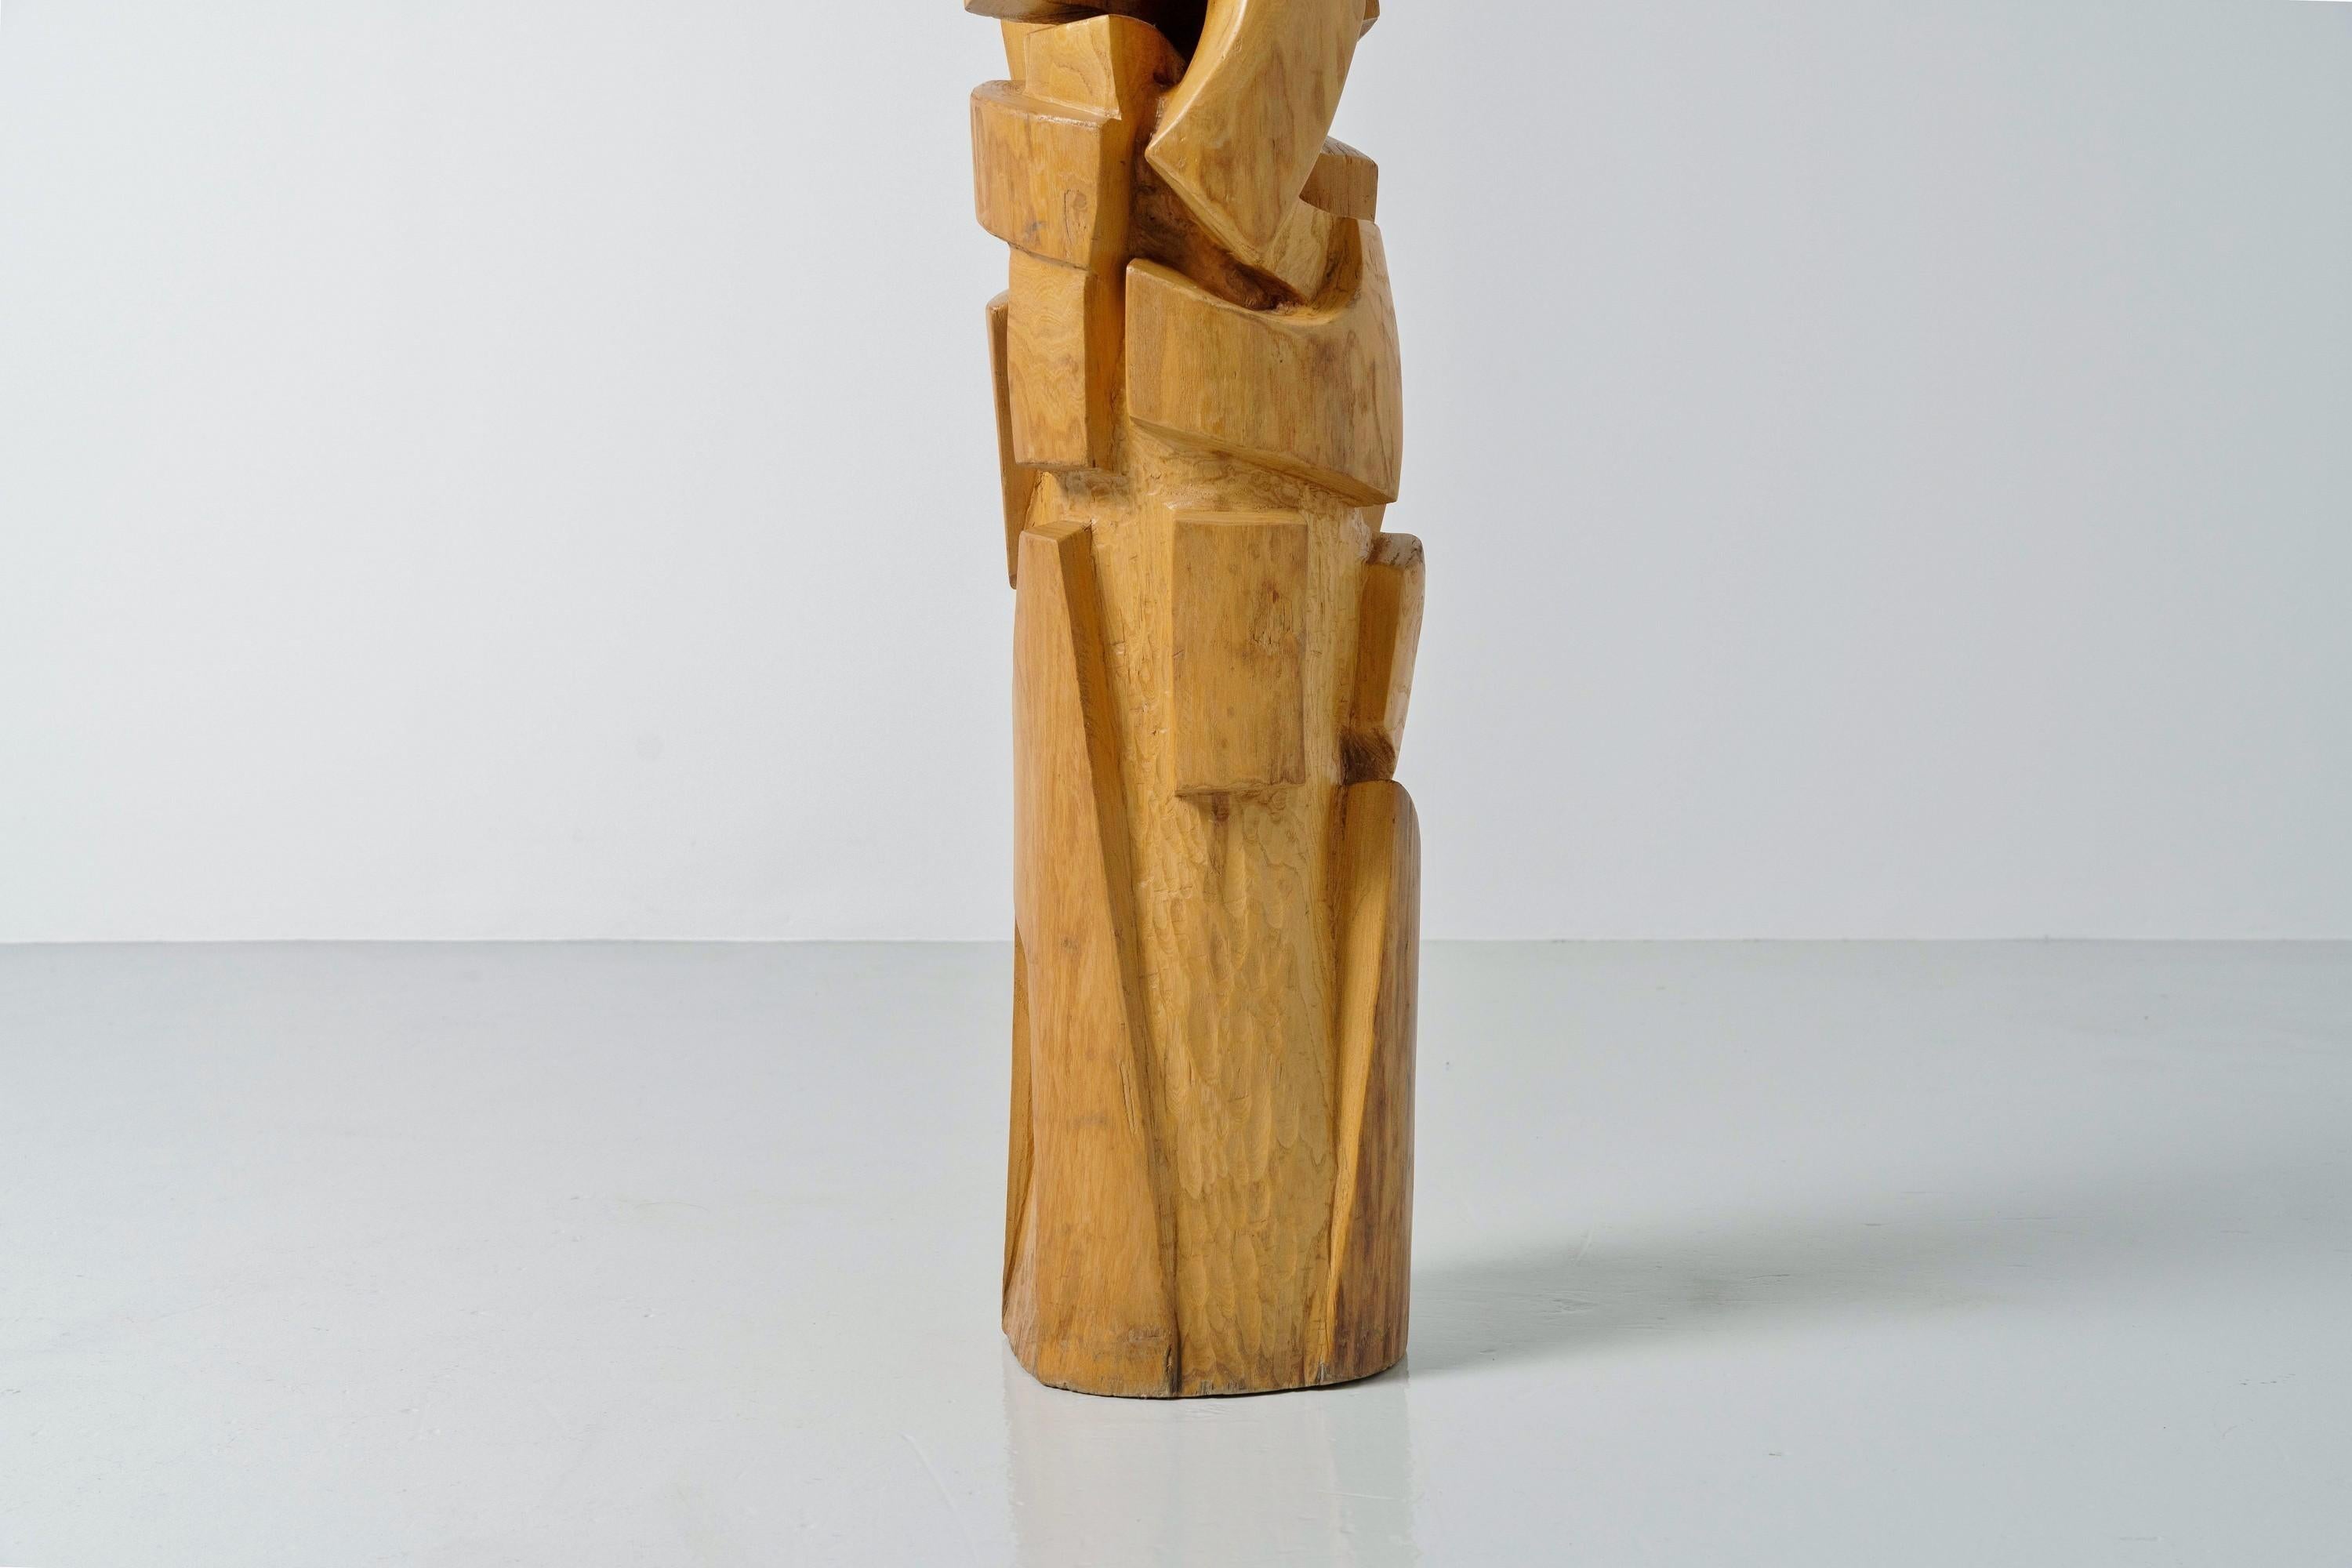 Sculpture totum très agréable à l'œil et attrayante de la main de l'artiste néerlandais Rob van 't Zelfde, réalisée dans les années 1970. La sculpture est fabriquée en bois d'orme et est légèrement effilée vers le haut. Comme les poteaux TOTEM qui